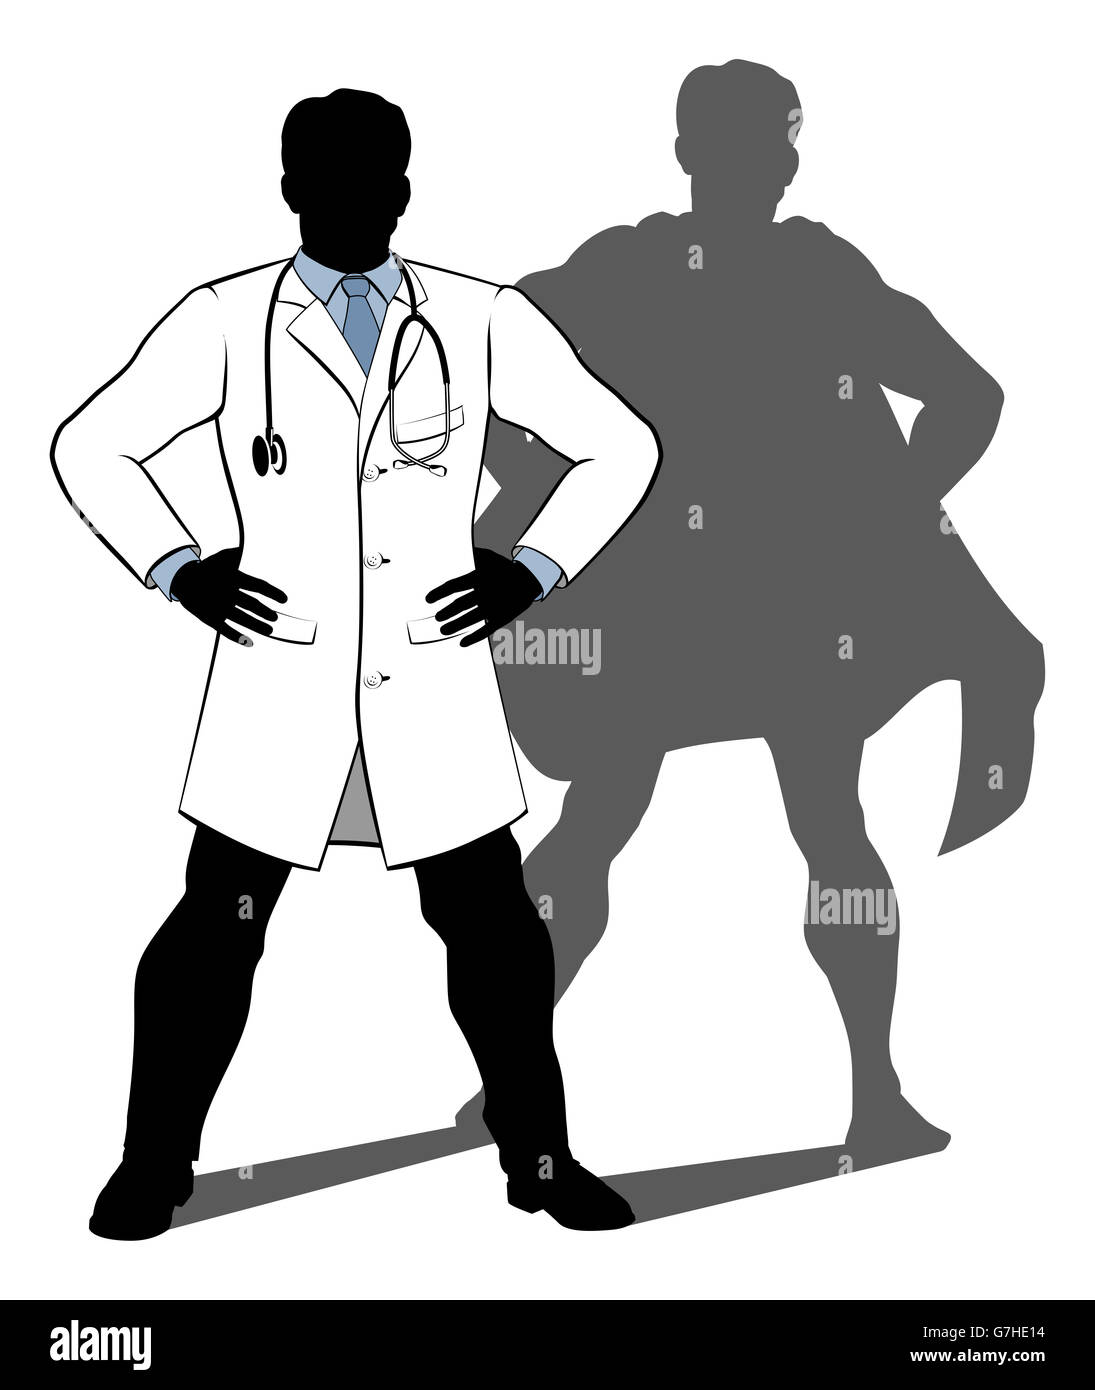 Un medico super hero silhouette illustrazione concettuale di un medico in piedi con le mani sui suoi fianchi con un'ombra rivelando h Foto Stock